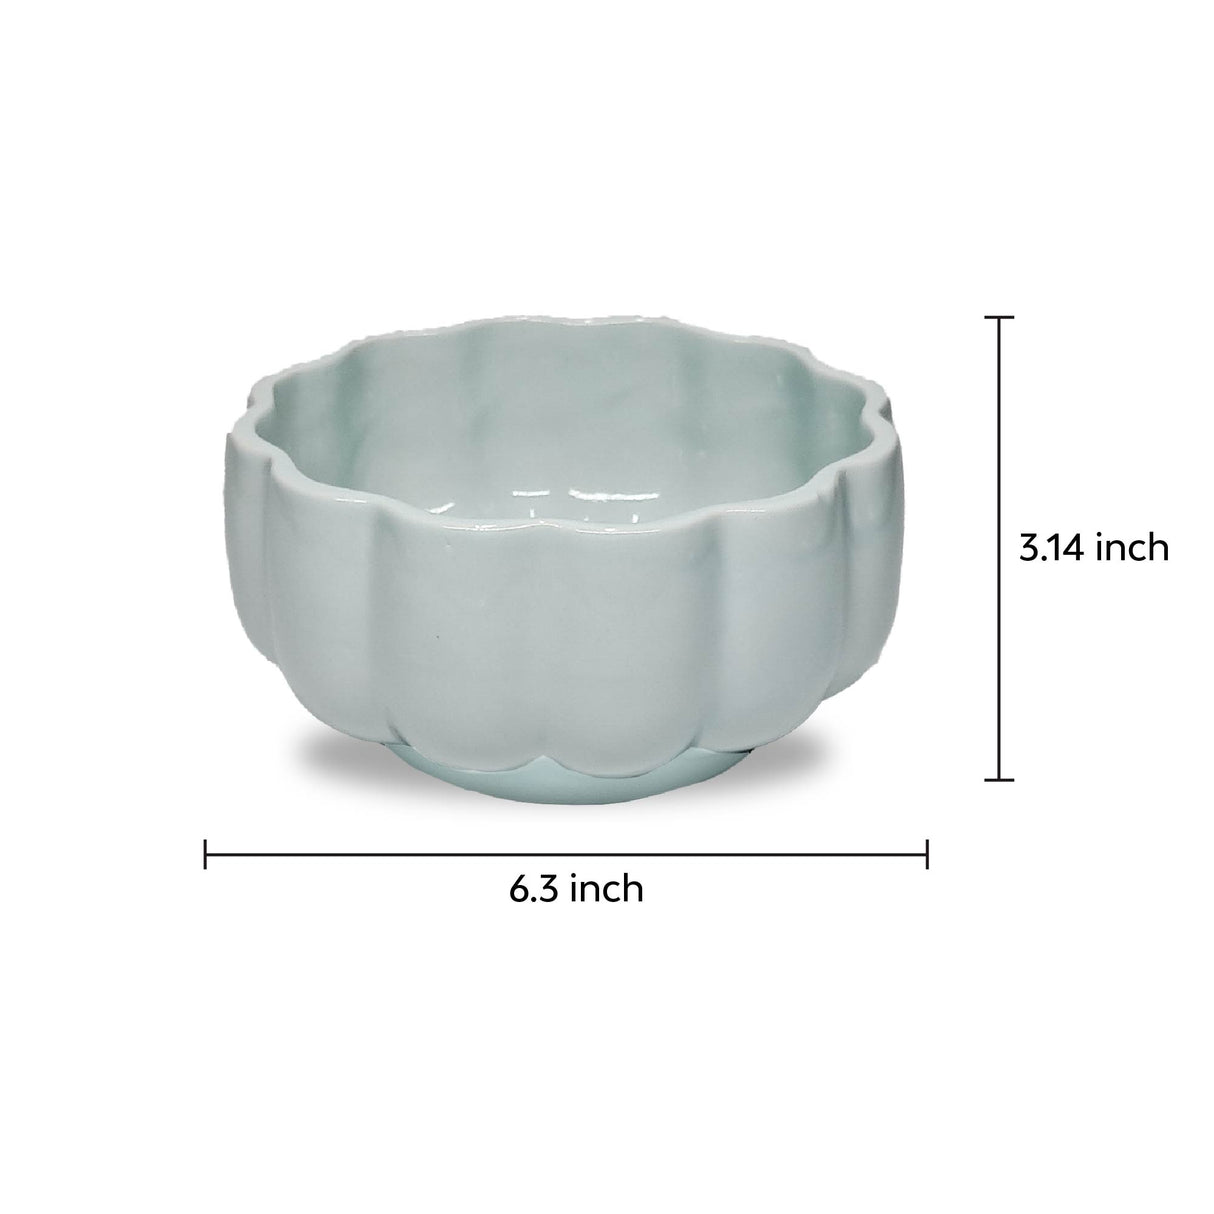 Dishwasher safe Marine blue scalloped serving bowl 